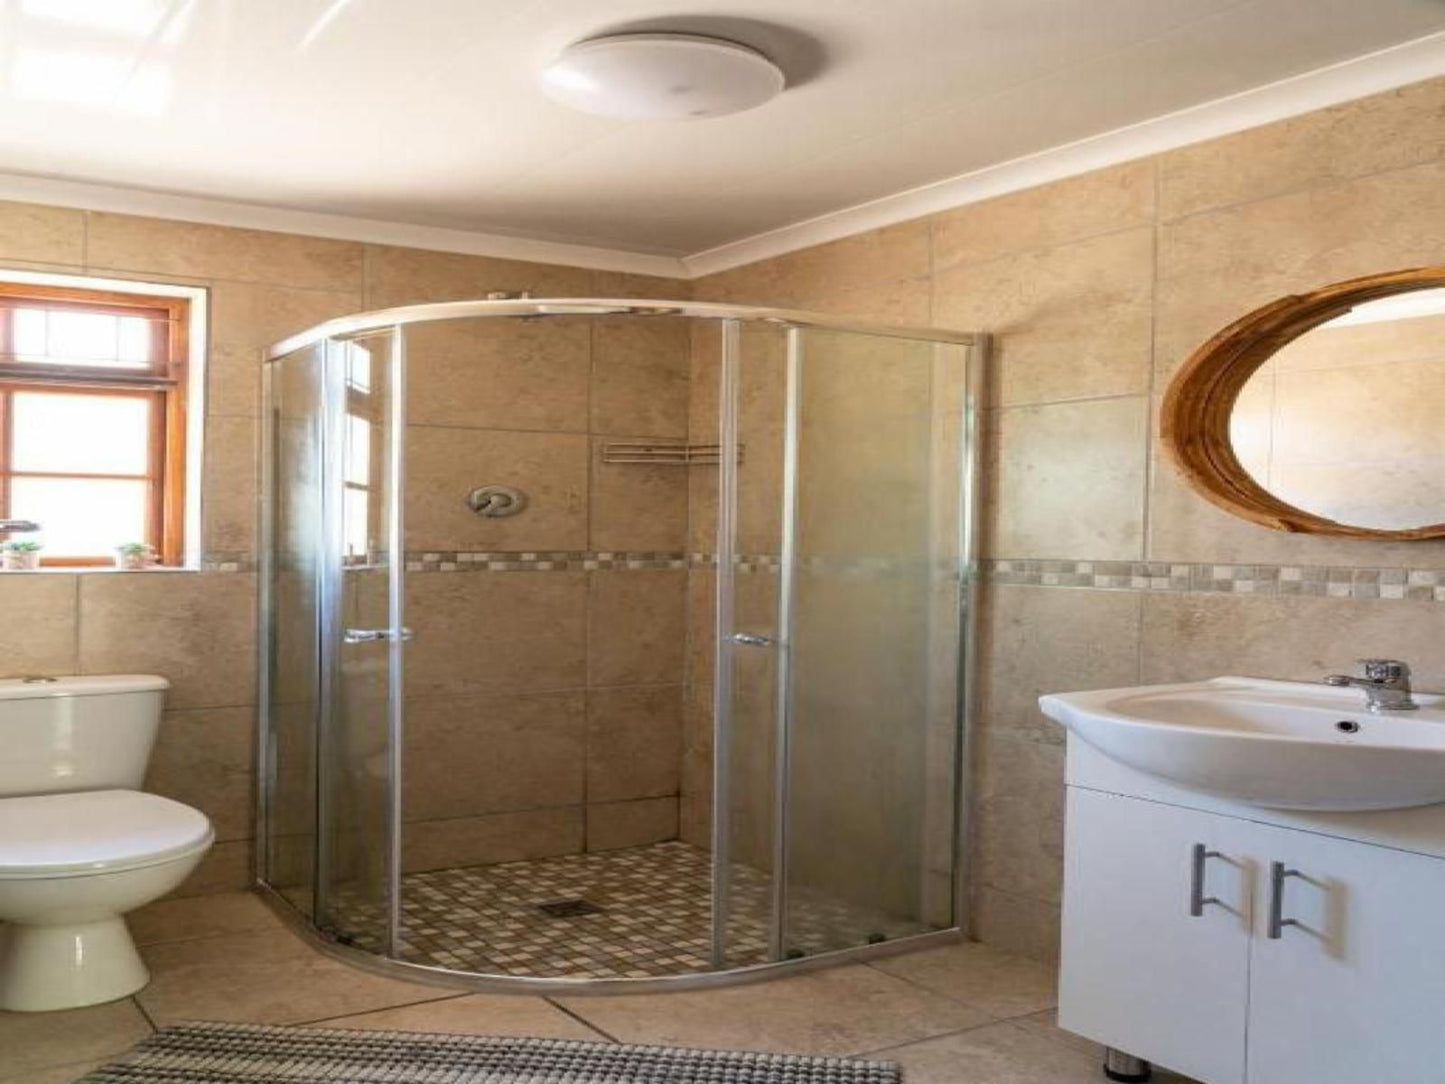 De Hollandsche Molen Wemmershoek Western Cape South Africa Bathroom